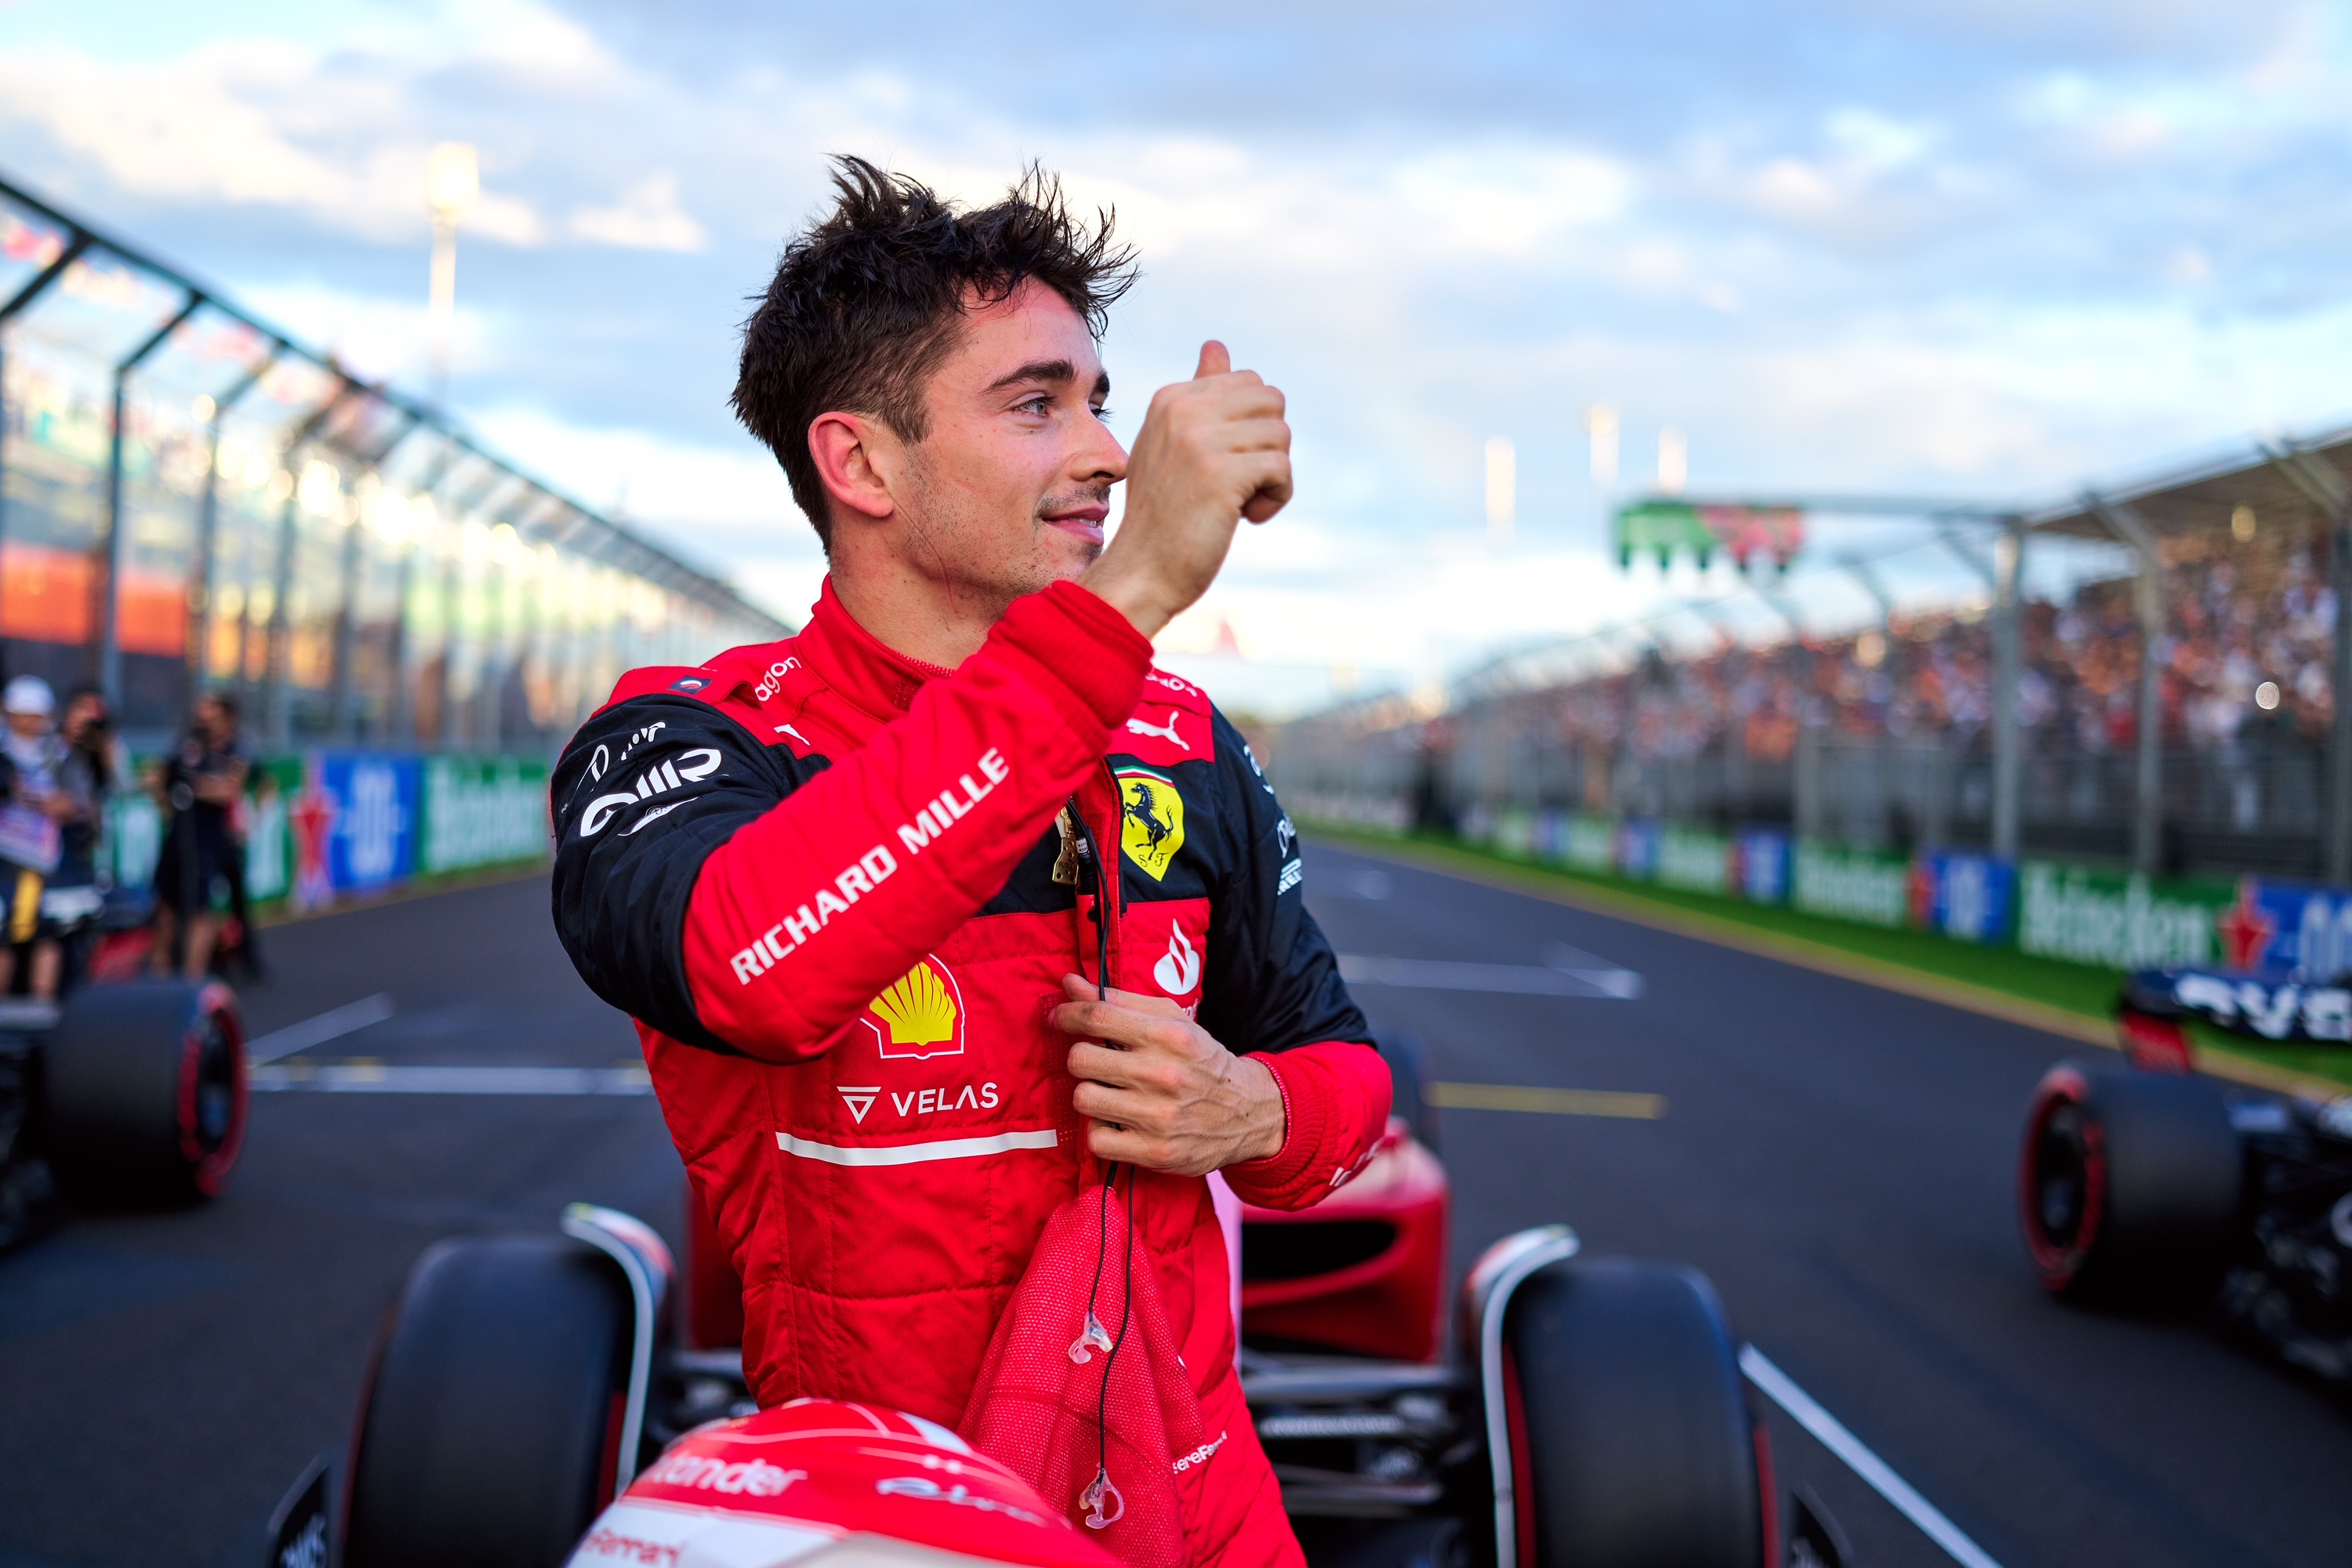 A shame Carlos got unlucky in Q3" - Charles Leclerc | 2022 Australian GP